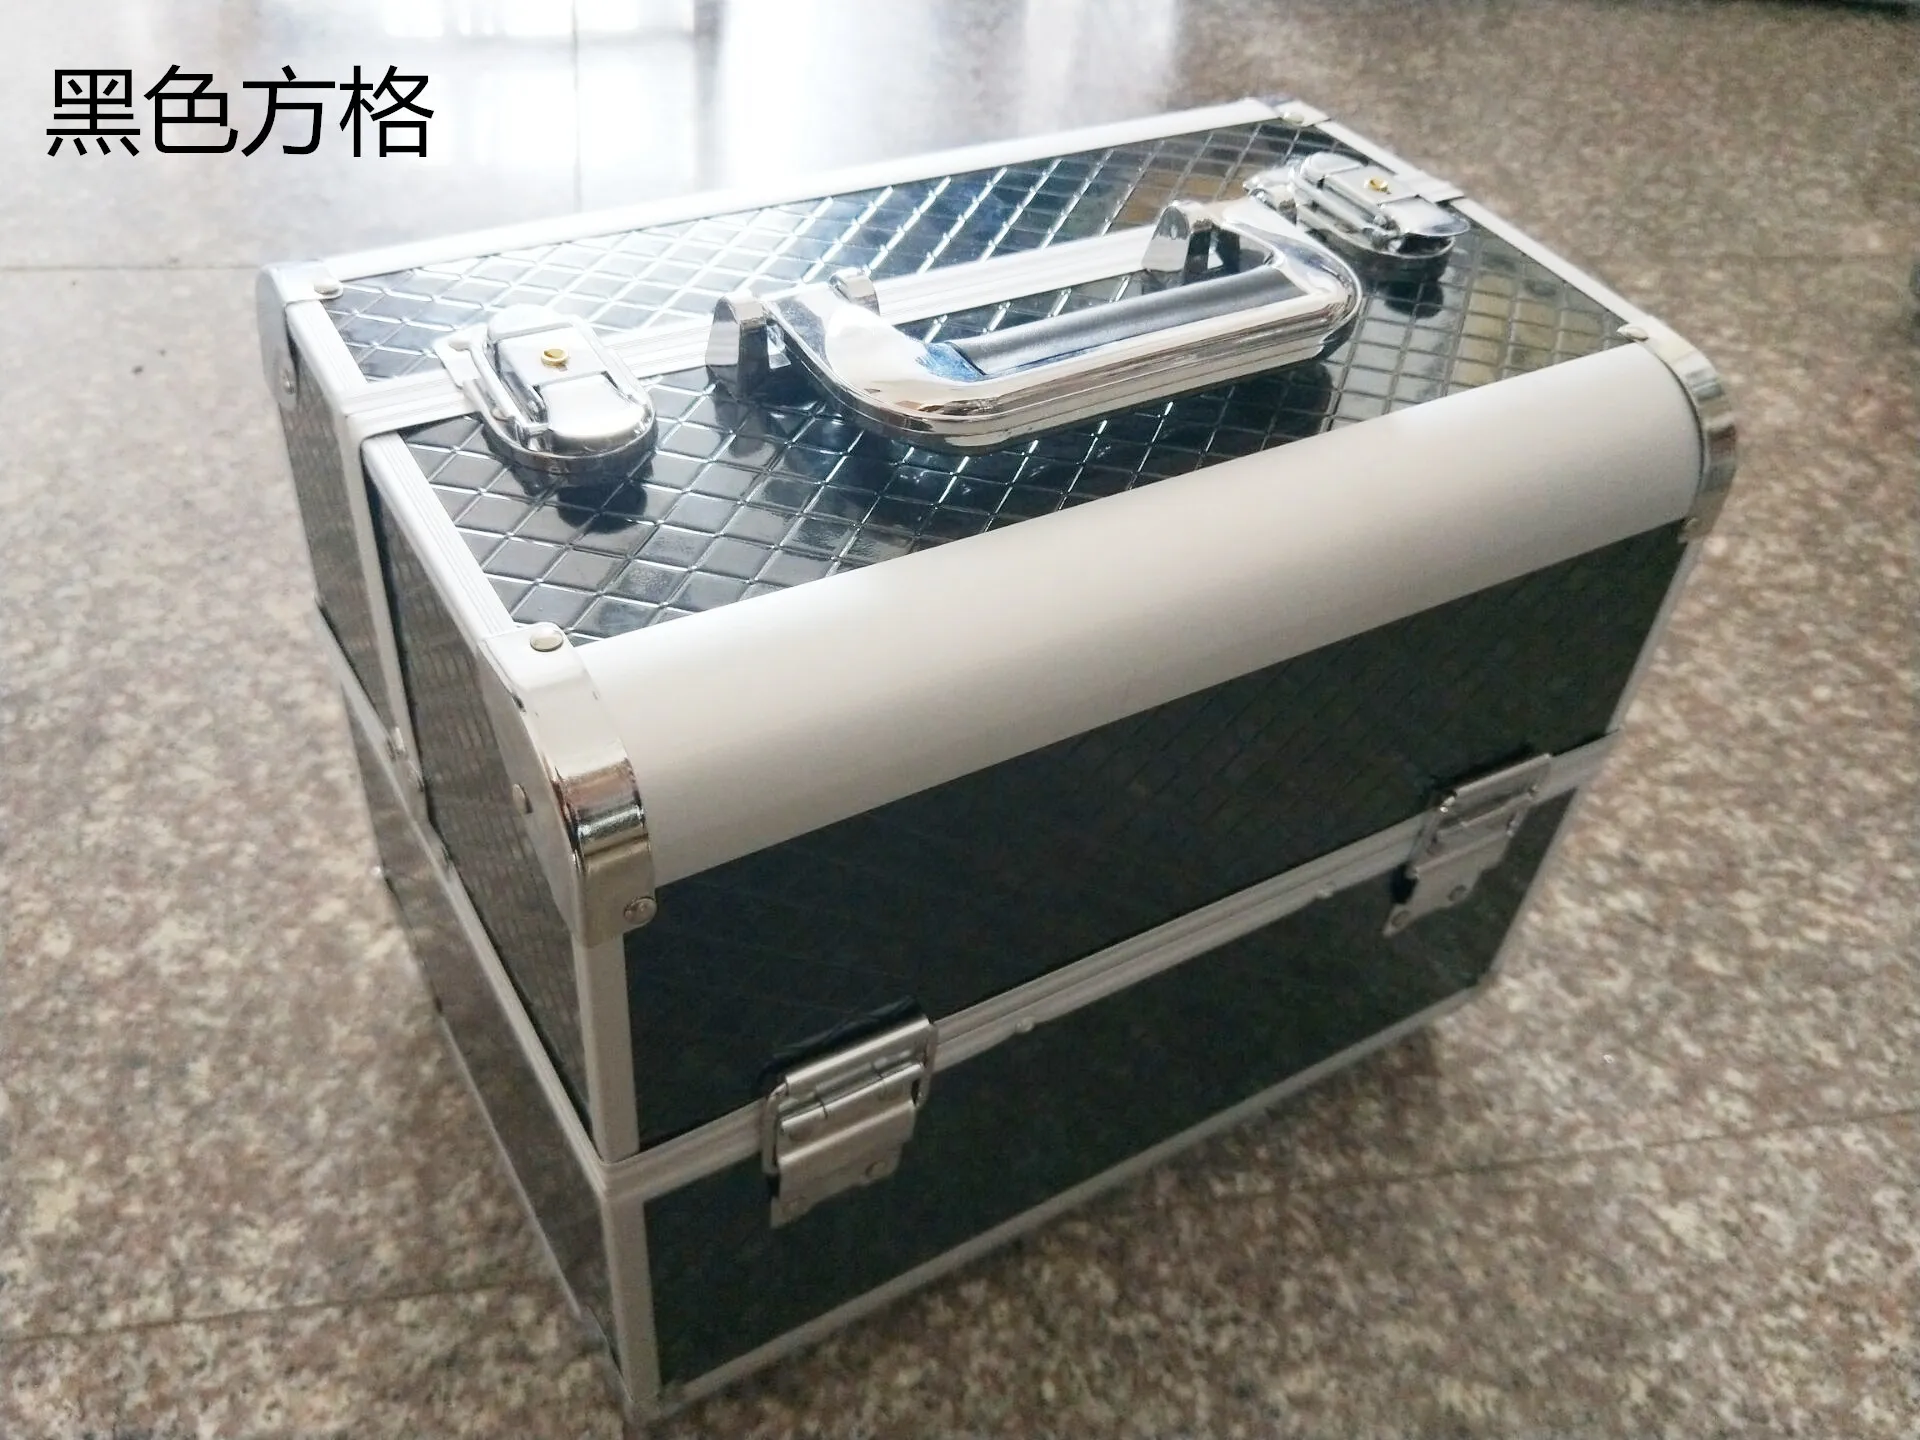 Двойная открытая коробка для макияжа из алюминиевого сплава, чехол для косметических инструментов Munsu, коробка для макияжа mei jia xiang, профессиональный портативный алюминиевый чехол для макияжа